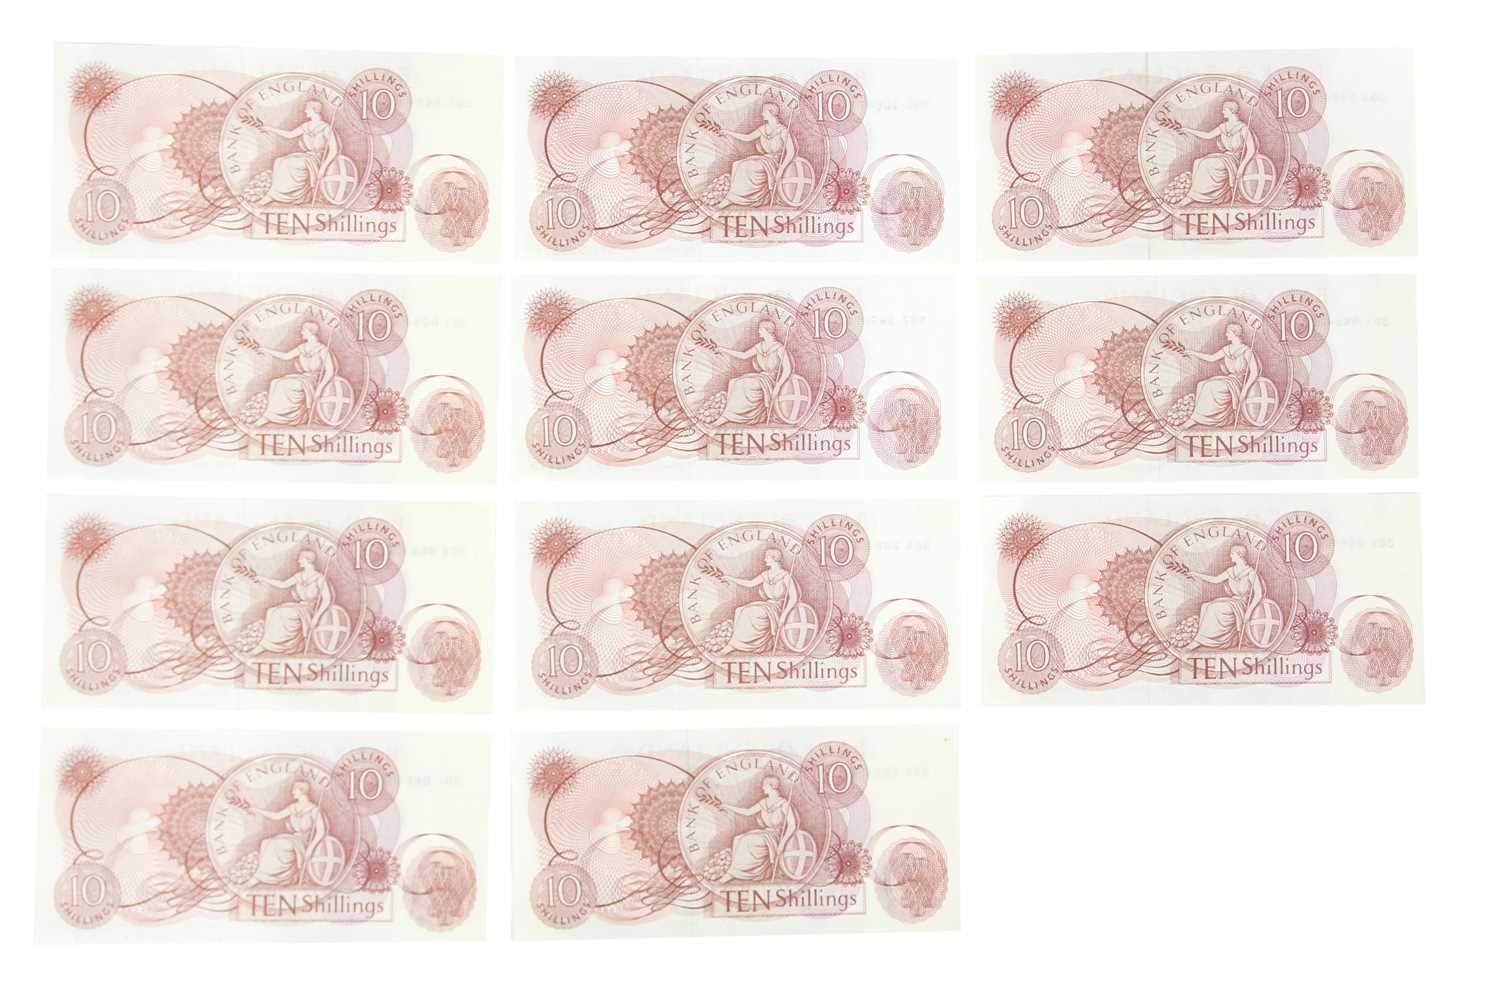 J.S. Fforde 10 shilling notes EF - UNC grade (x11) - Image 2 of 2